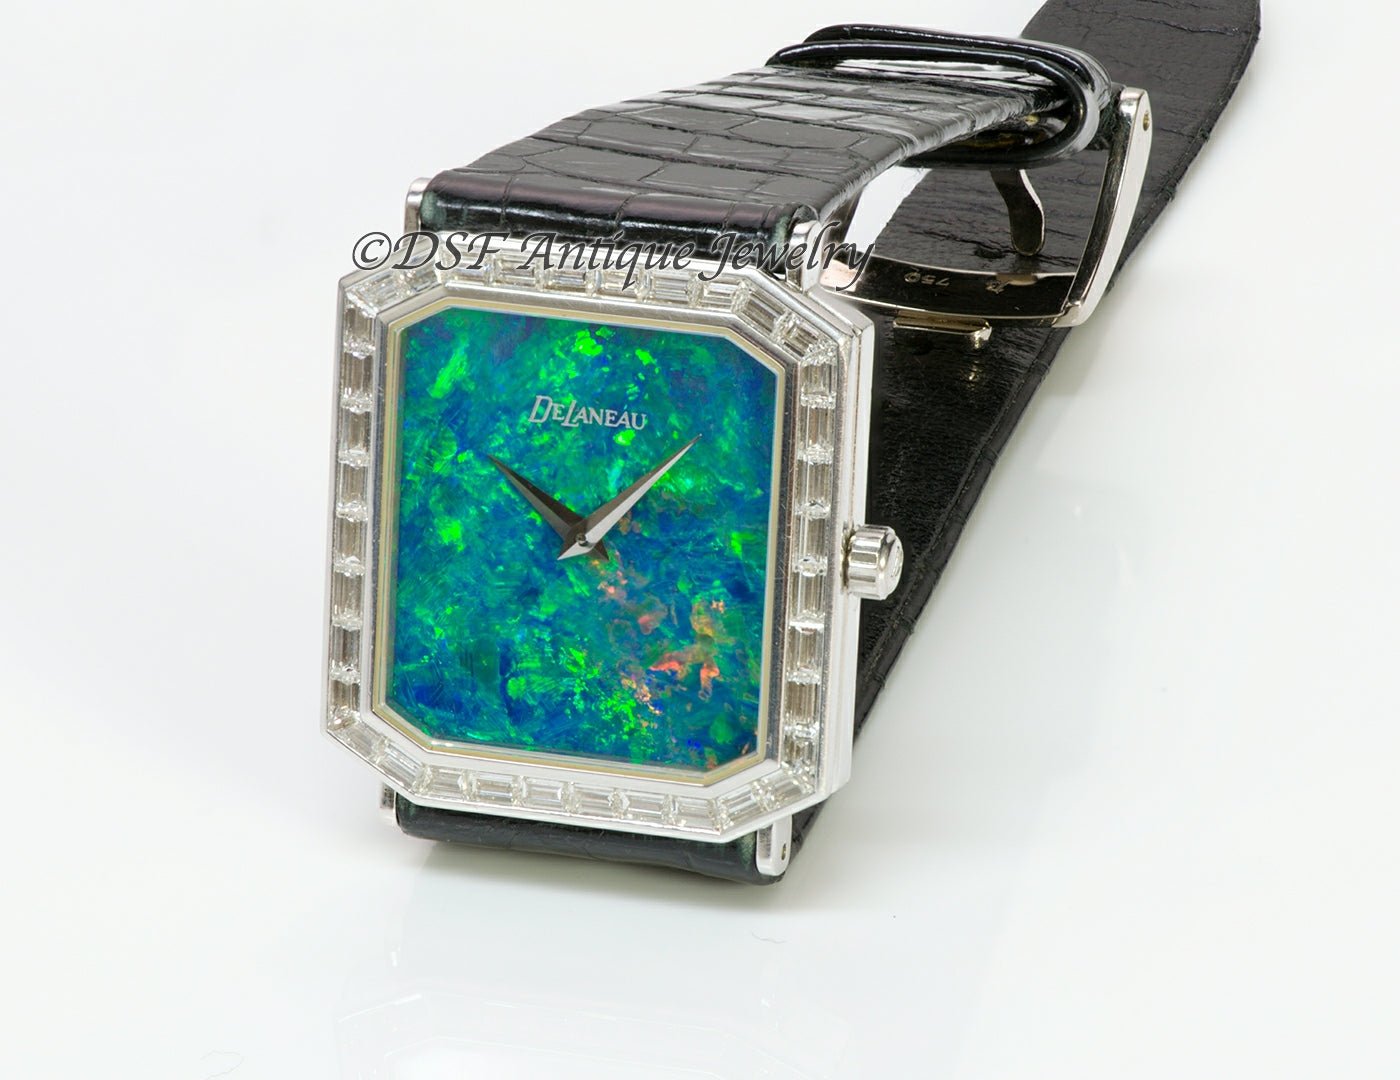 DeLaneau Black Opal 18K Gold Diamond Watch